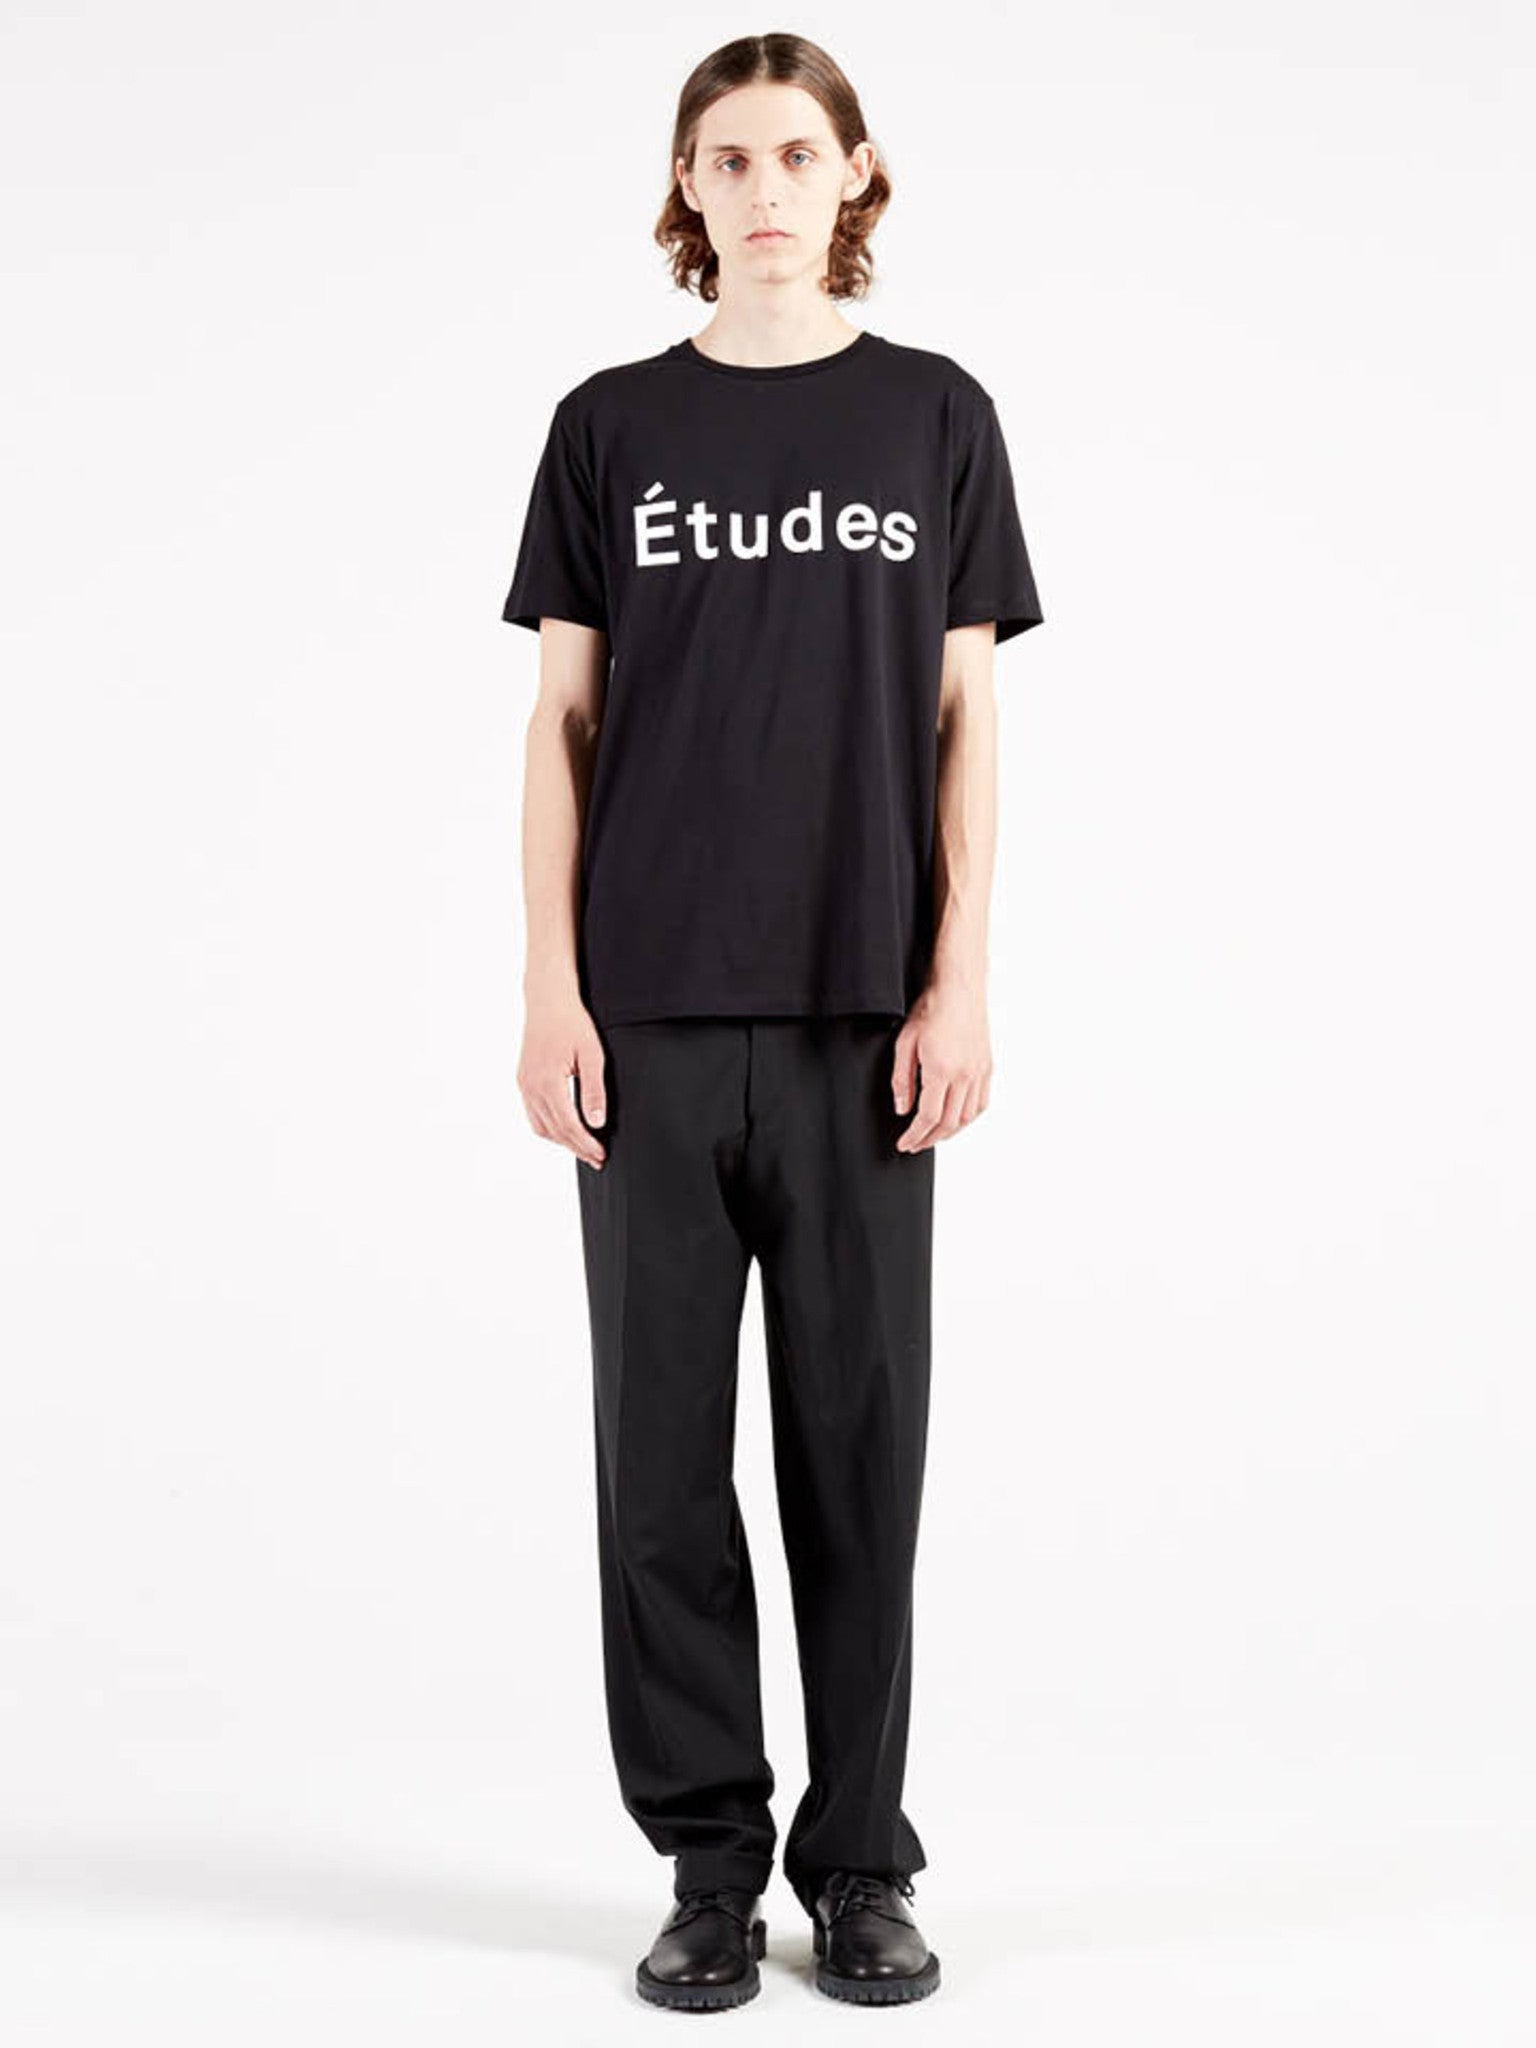 Études Studio - Page Études Black T-shirt